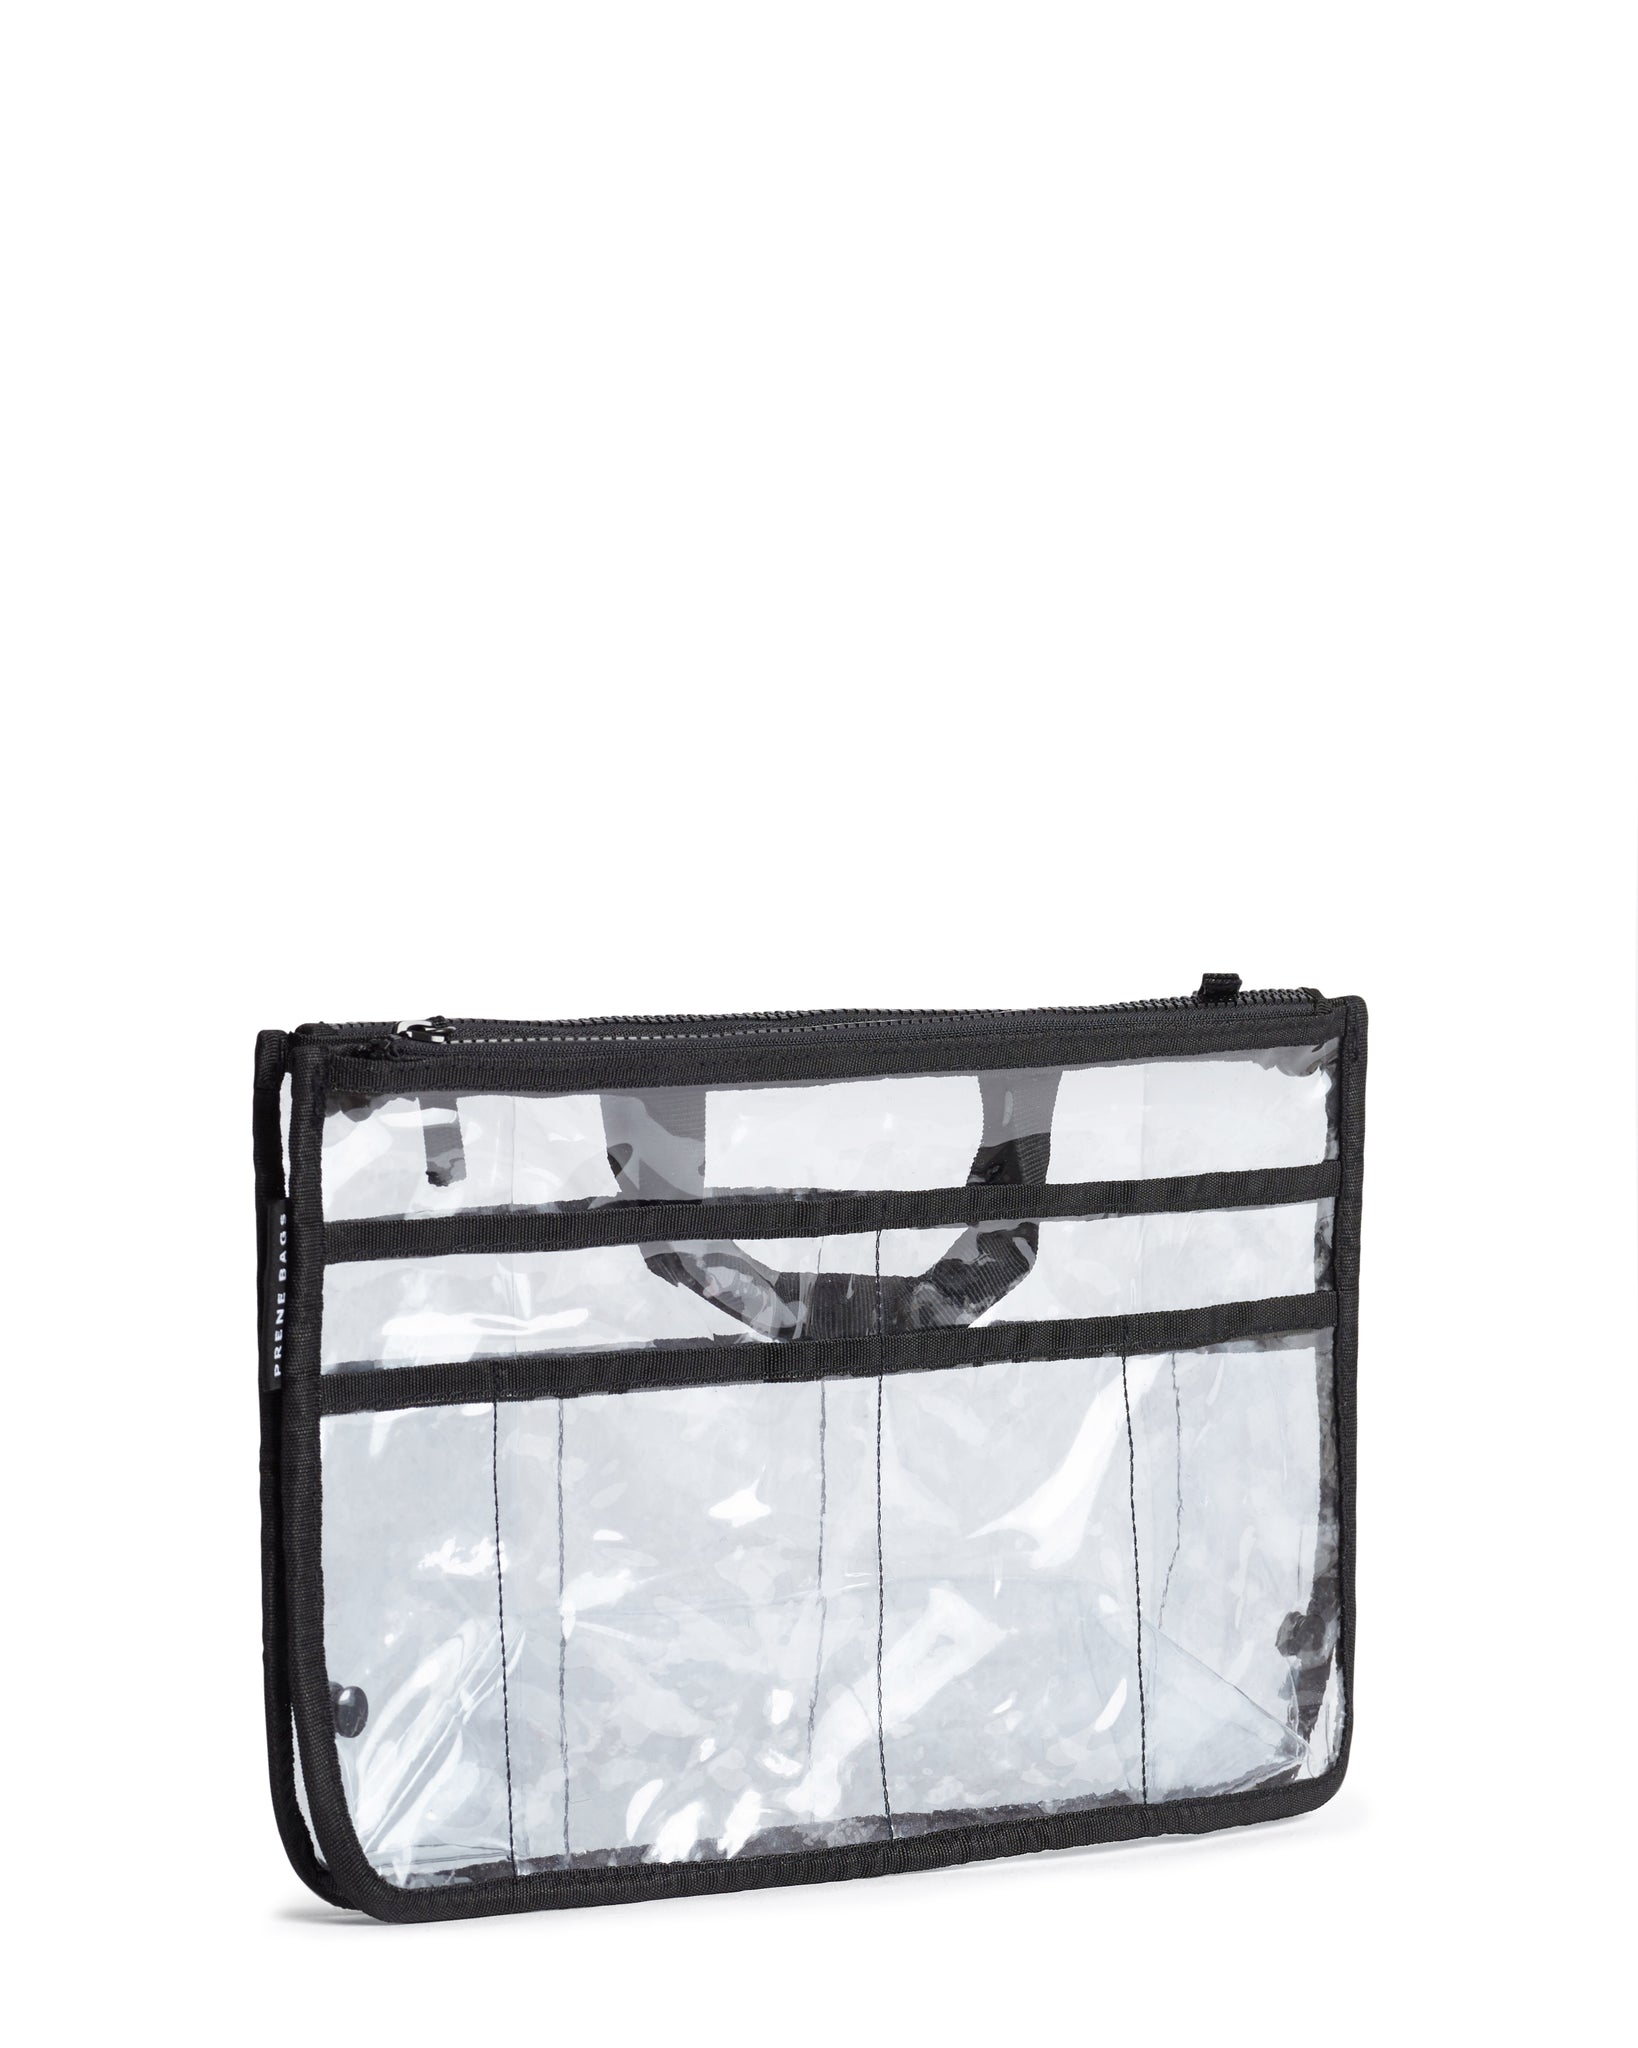 Bag Organizer / Organiser Insert (CLEAR) – Prene